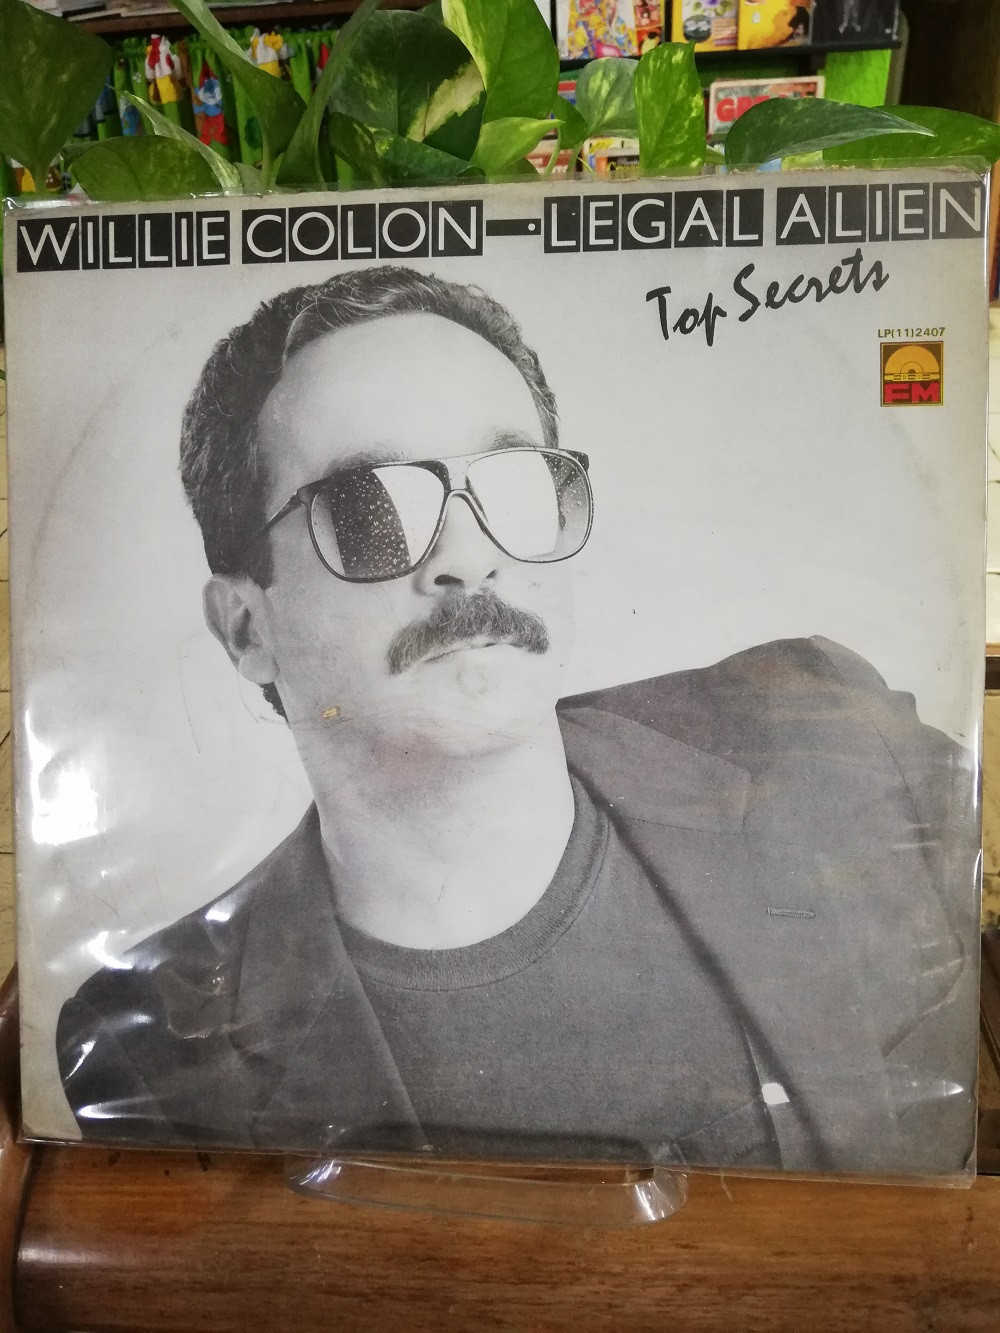 Imagen LP WILLIE COLÓN - TOP SECRET LEGAL ALIEN 1